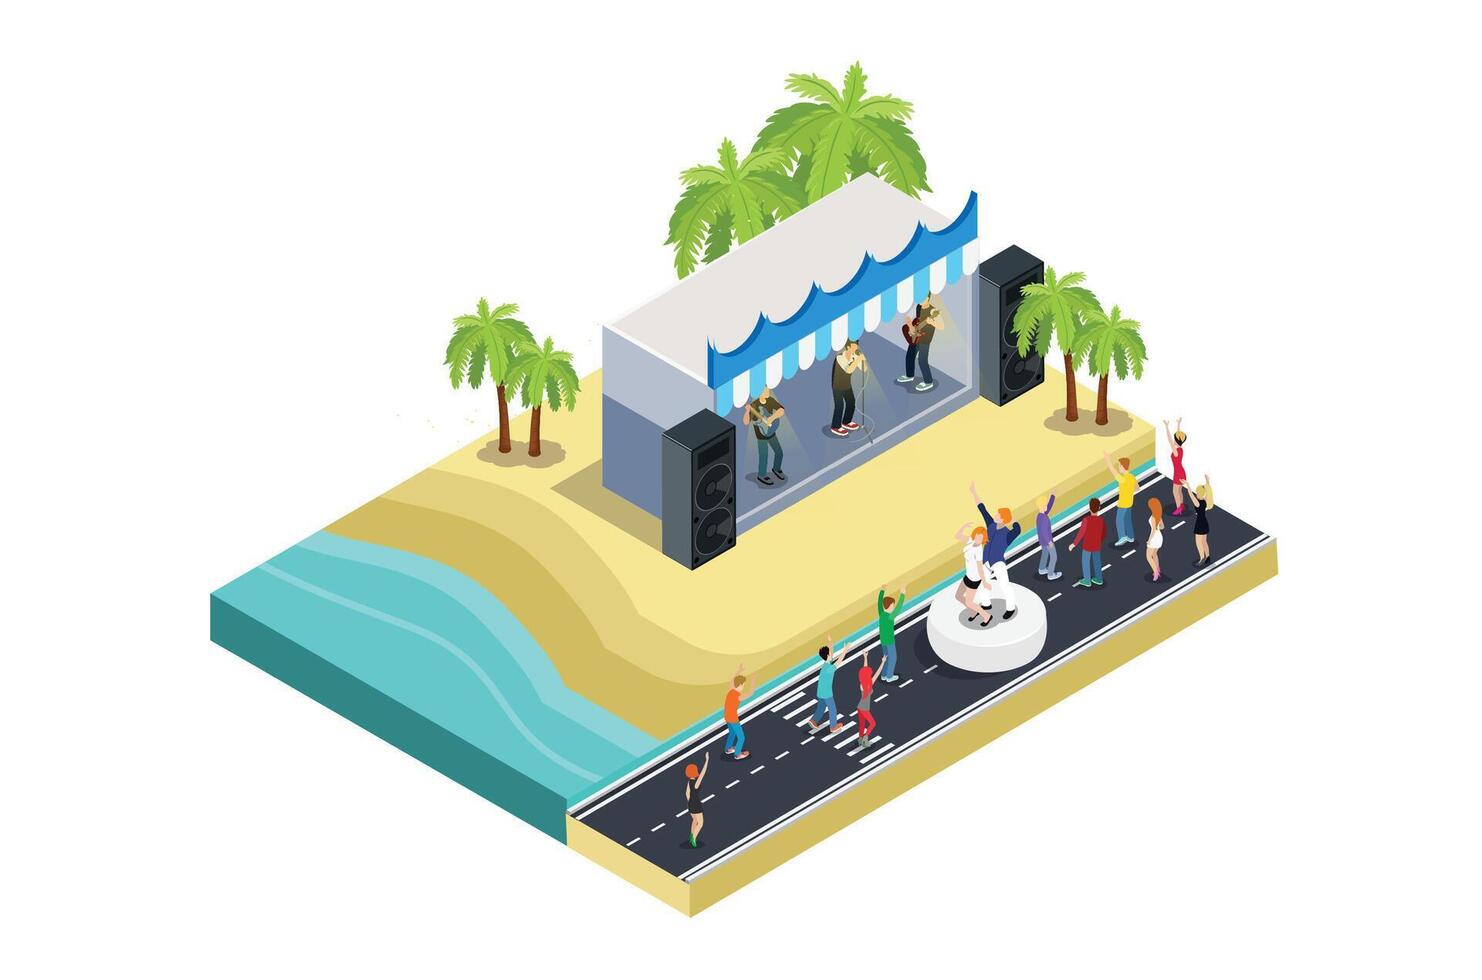 Illustration von ein Musik- Veranstaltung Festival auf ein Strand mit Blau Meer, Autobahn und geparkt Fahrzeuge im ein Reihe, 3d Konzept von isometrisch Aussicht von Konzert Party Hintergrund und Bühne Landschaft. vektor